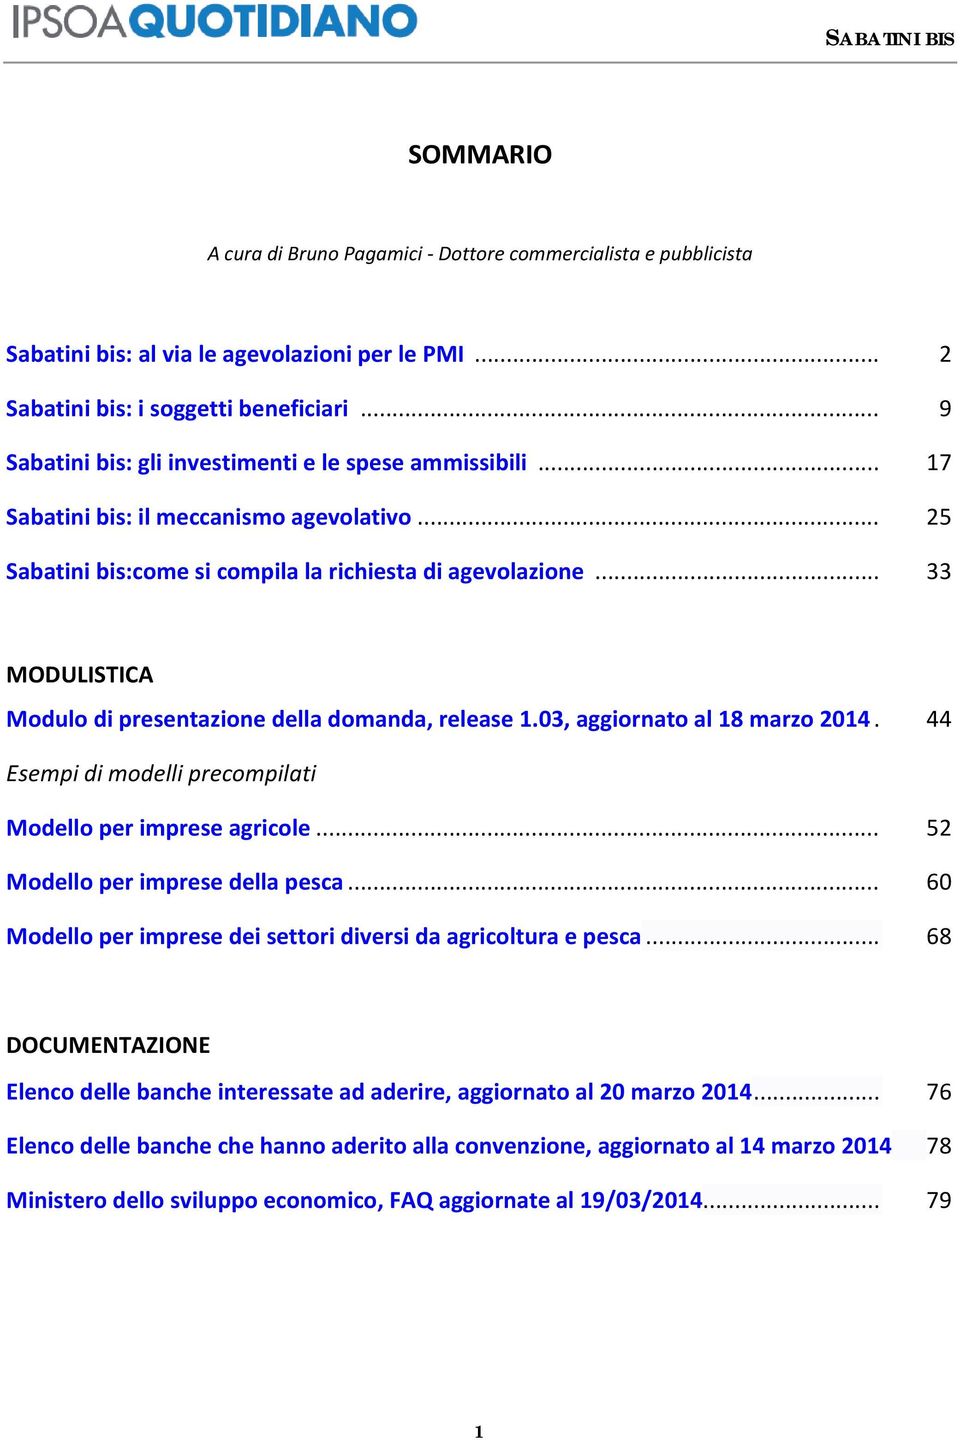 .. 33 MODULISTICA Modulo di presentazione della domanda, release 1.03, aggiornato al 18 marzo 2014. 44 Esempi di modelli precompilati Modello per imprese agricole... 52 Modello per imprese della pesca.